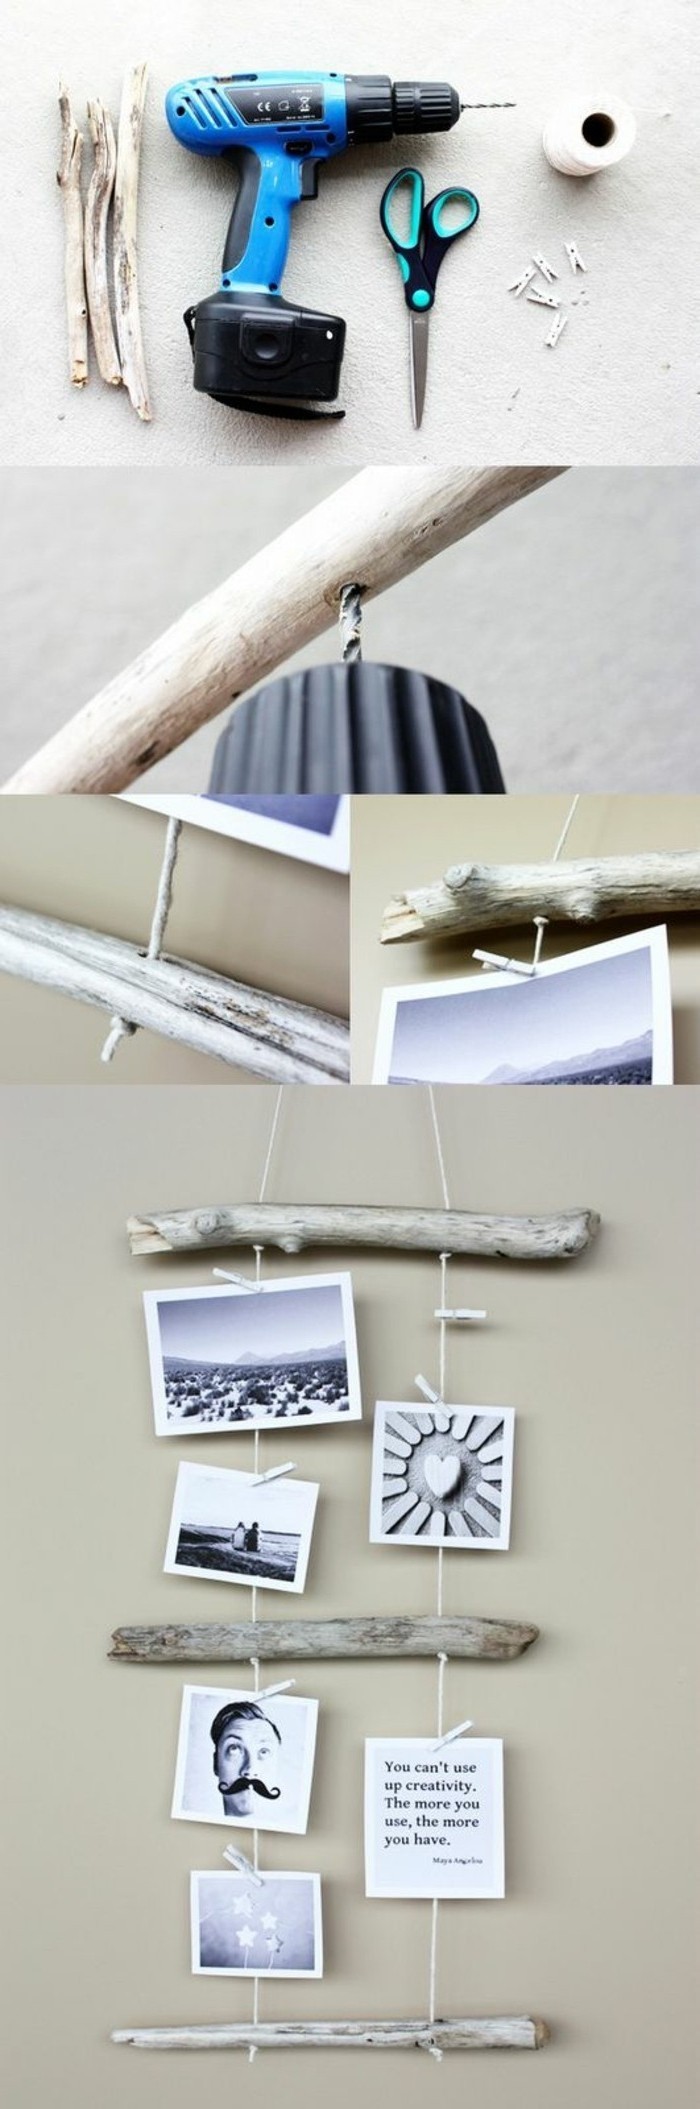 5-Tinker-avec-bois flotté-Fotowand-vous-faire papier peint aeste forage-ciseaux